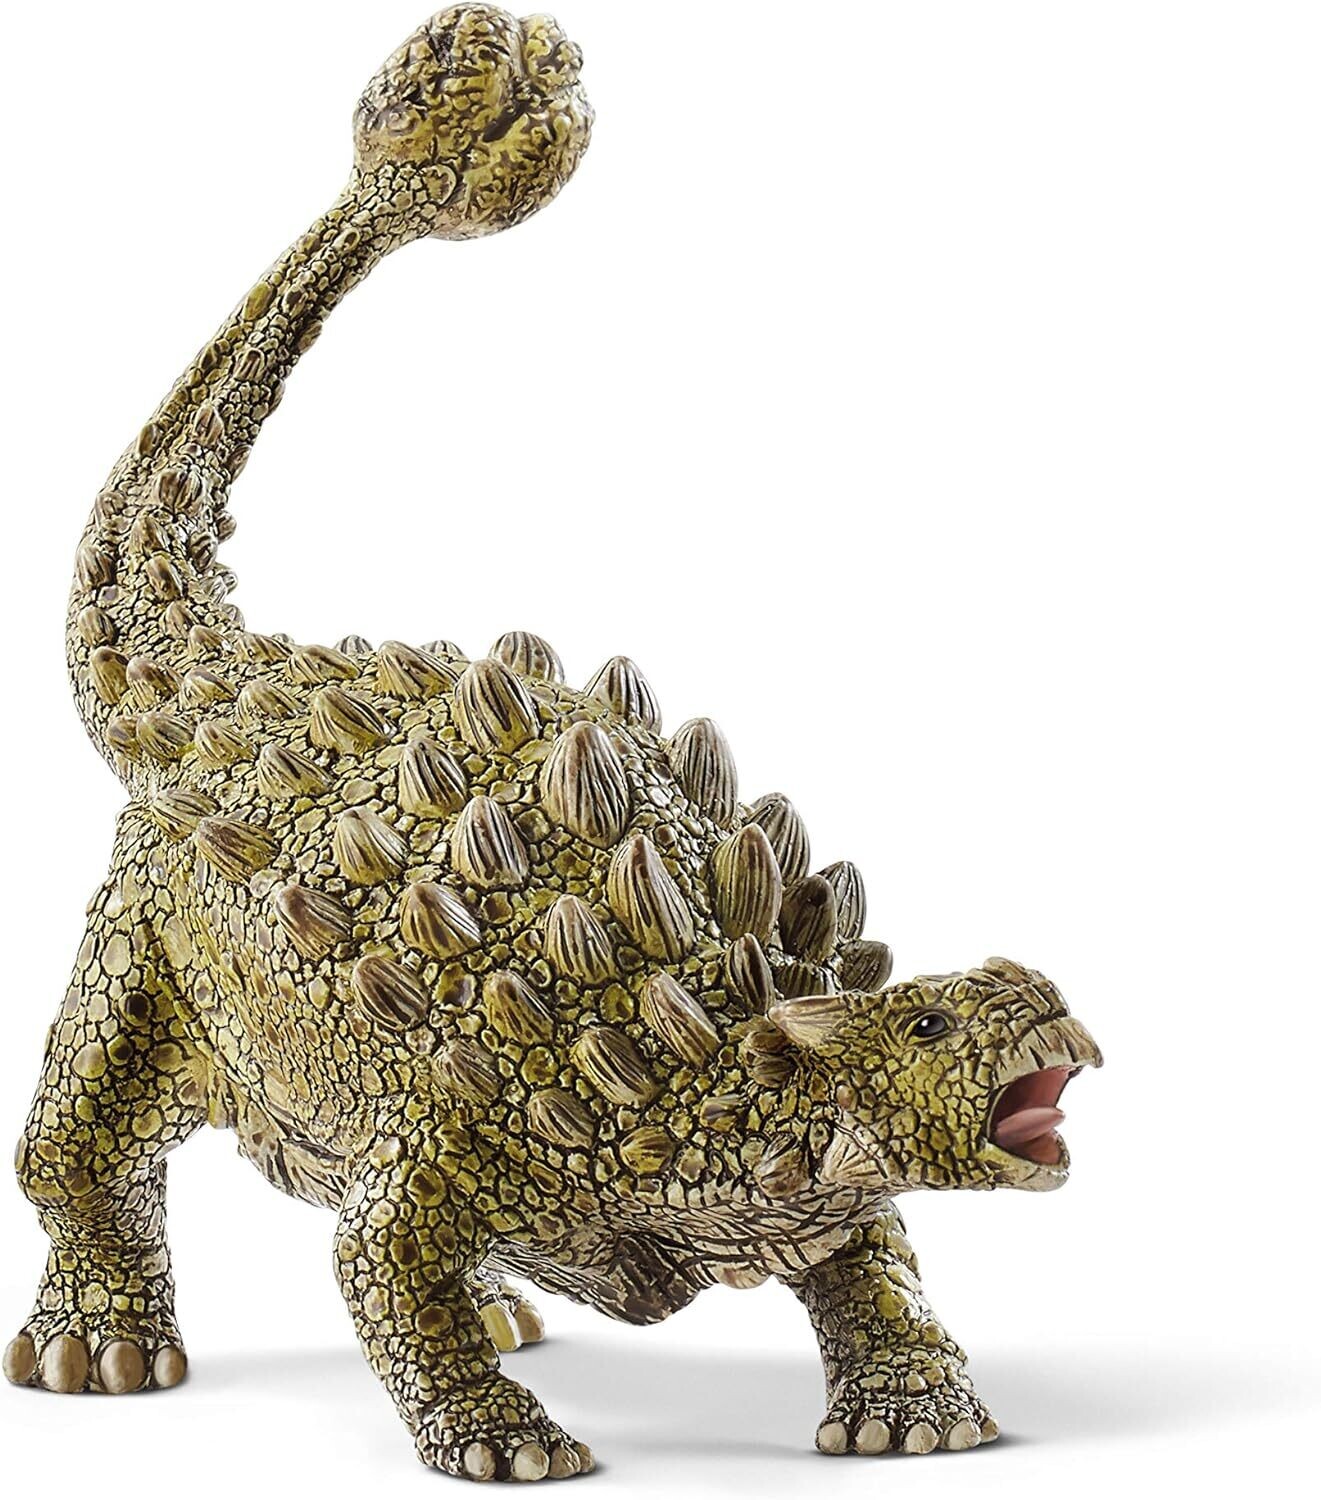 Ankylosaure dino Schleich
14x7x11cm